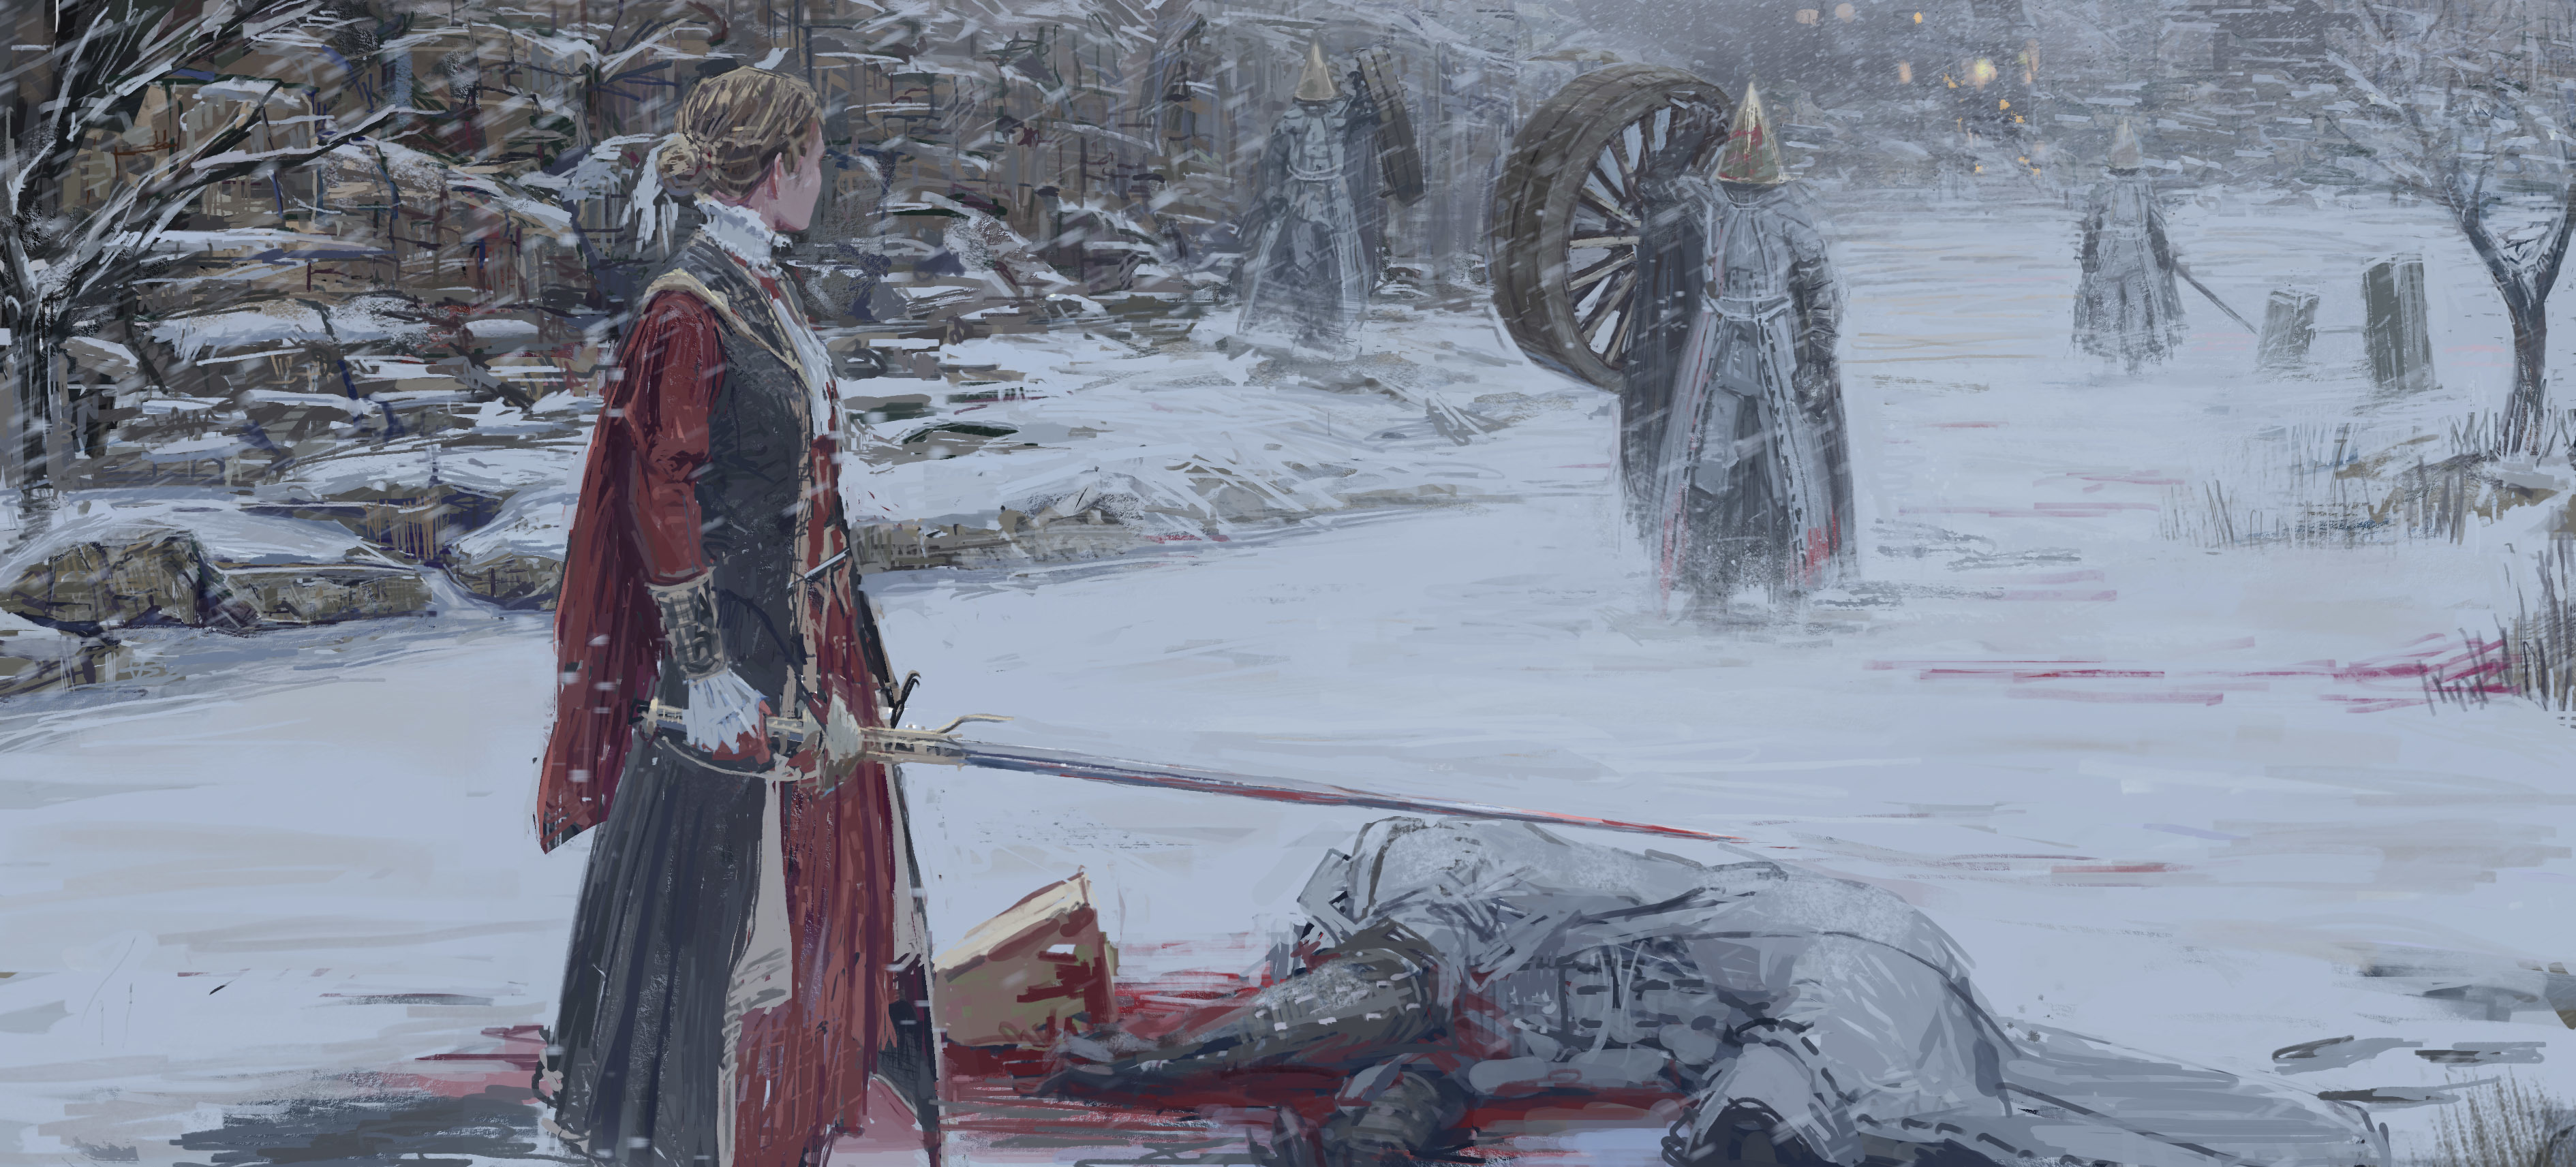 771720 скачать обои женщина воин, видеоигры, кровавый, снег, снегопад, мечи, зима - заставки и картинки бесплатно